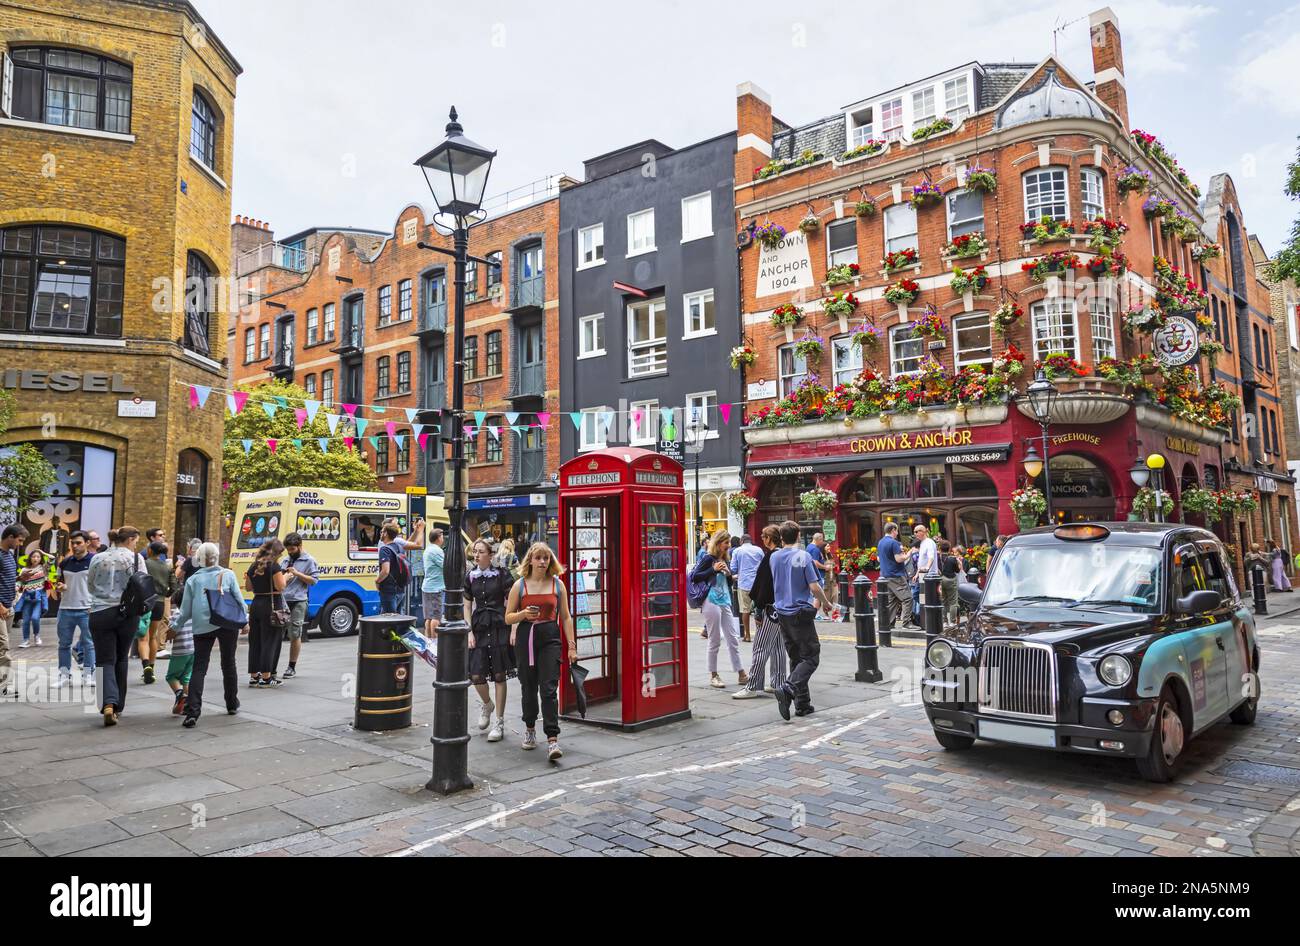 Scène de rue animée et vie de la ville sur un coin de rue avec cabine téléphonique rouge ; Londres, Angleterre Banque D'Images